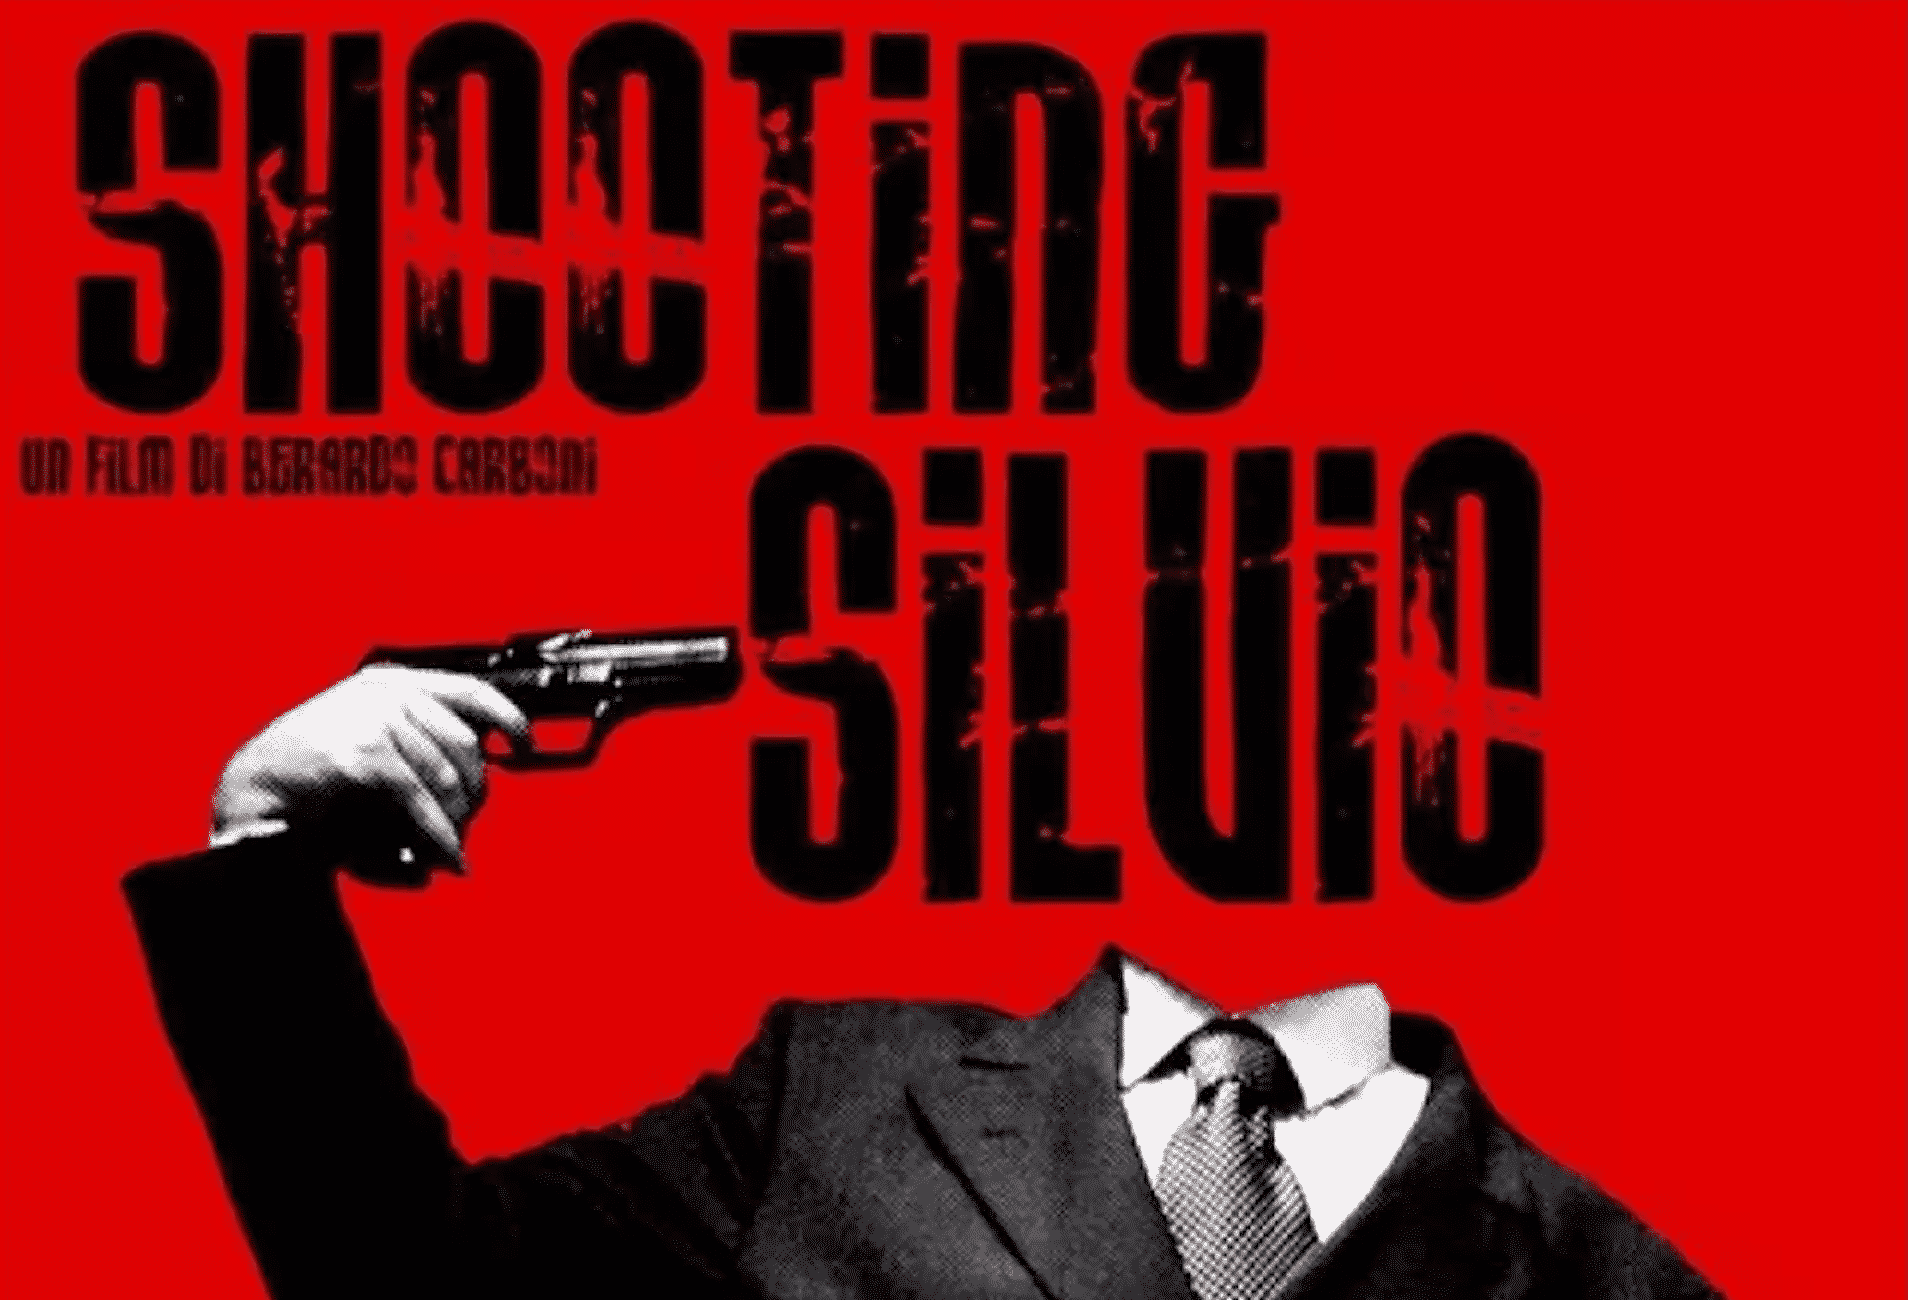 Shooting Silvio 1